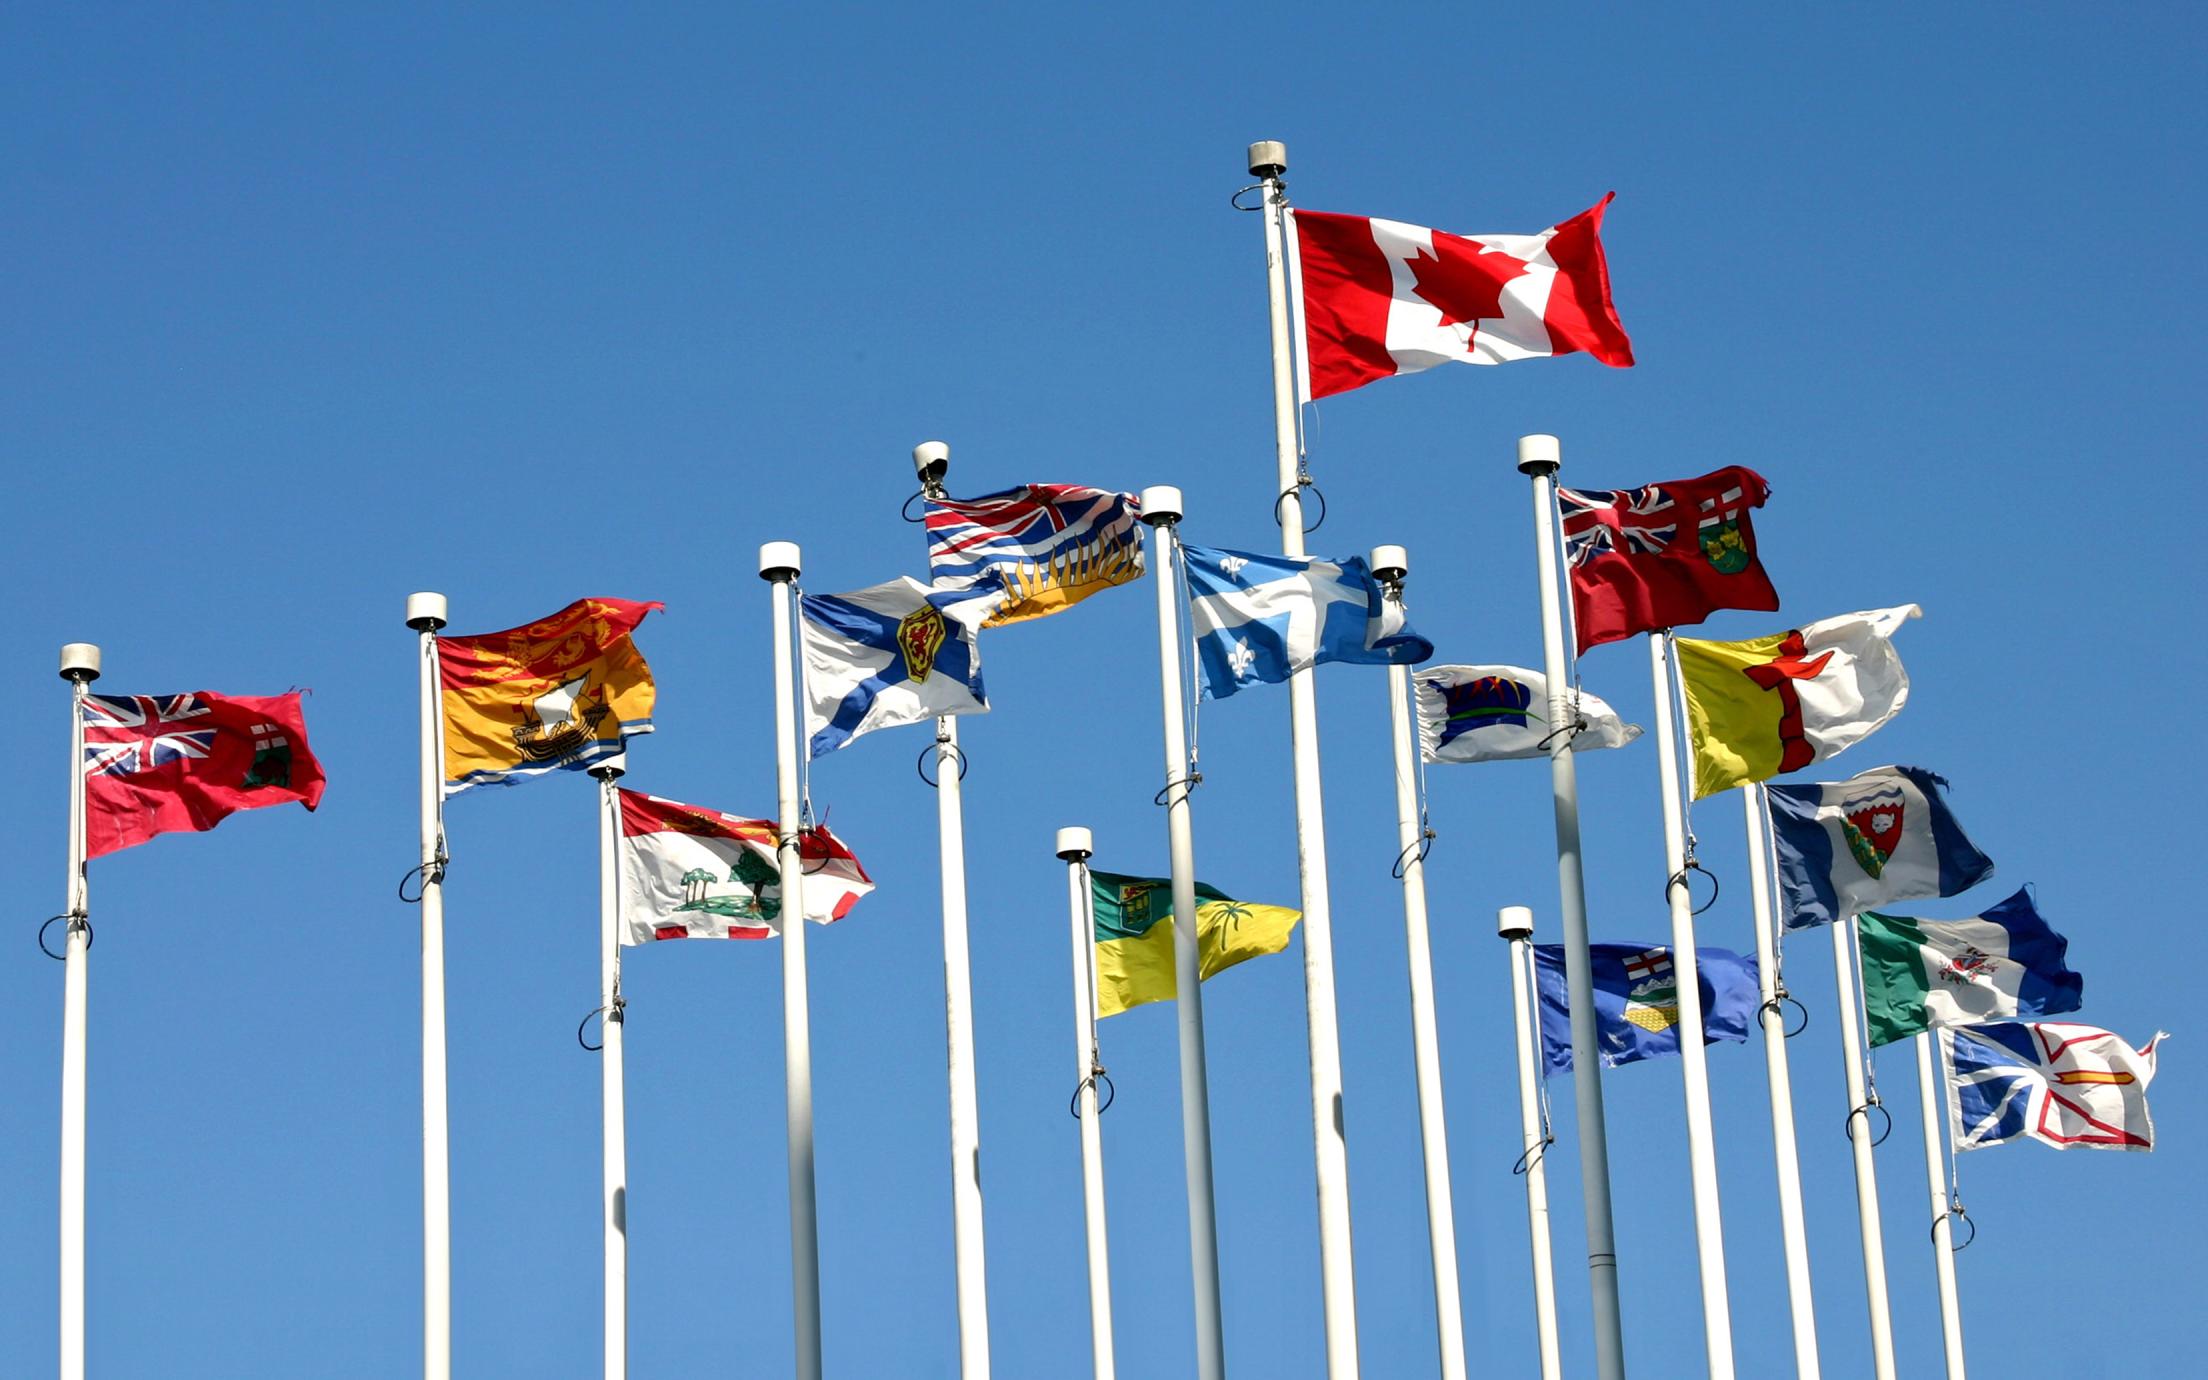 VIU Provincial Flags of Canada